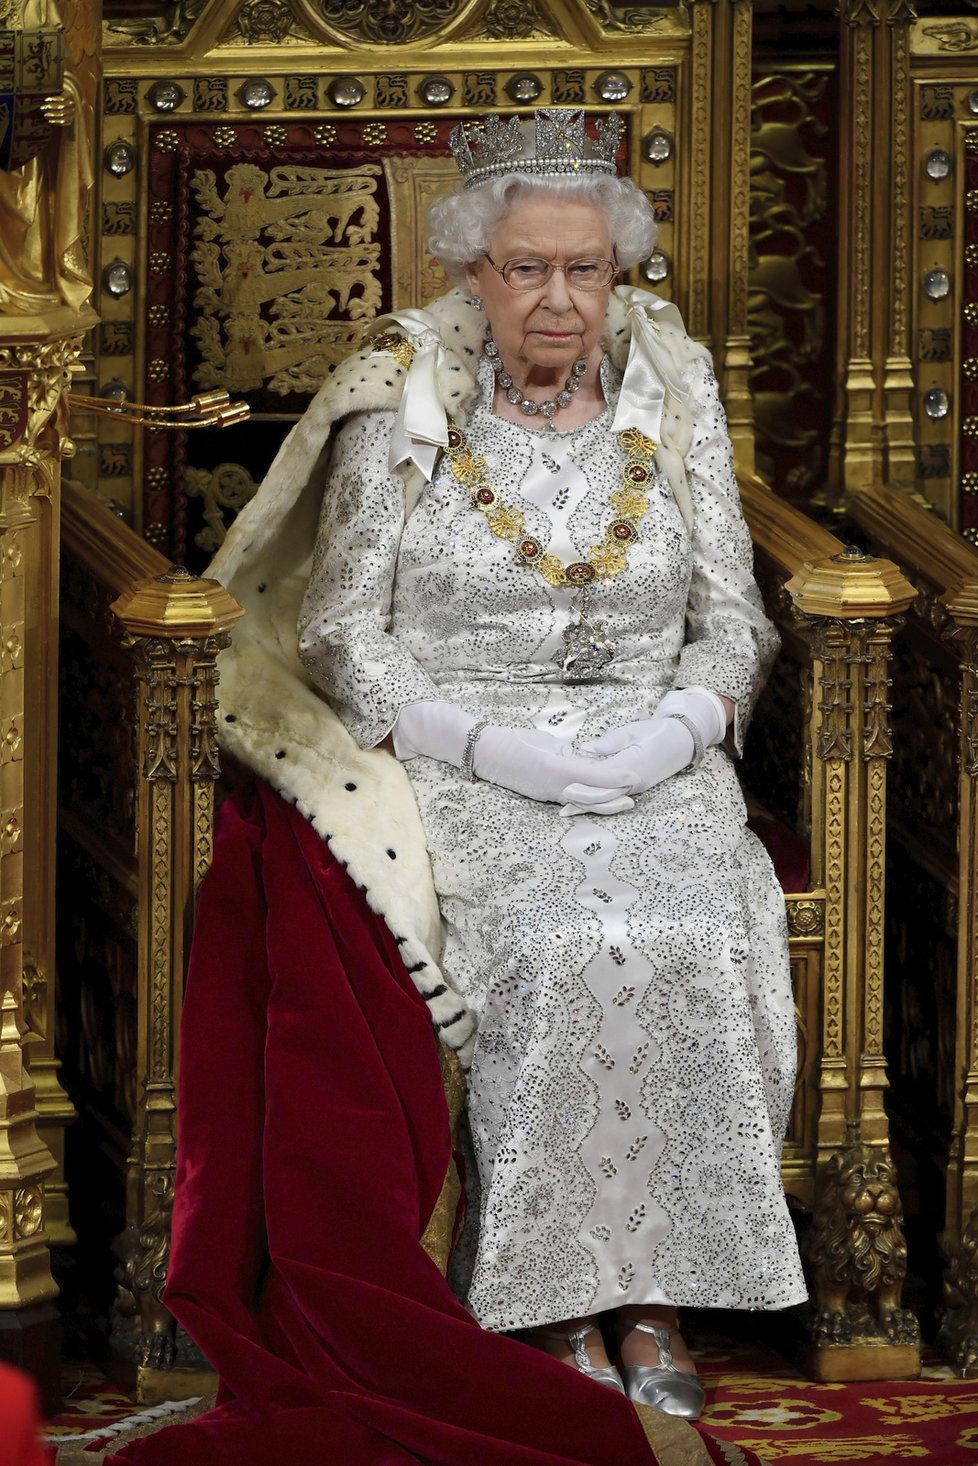 V roce 2020 by měla mít Británie nového monarchu, předpověděl renesanční věštec Nostradamus.